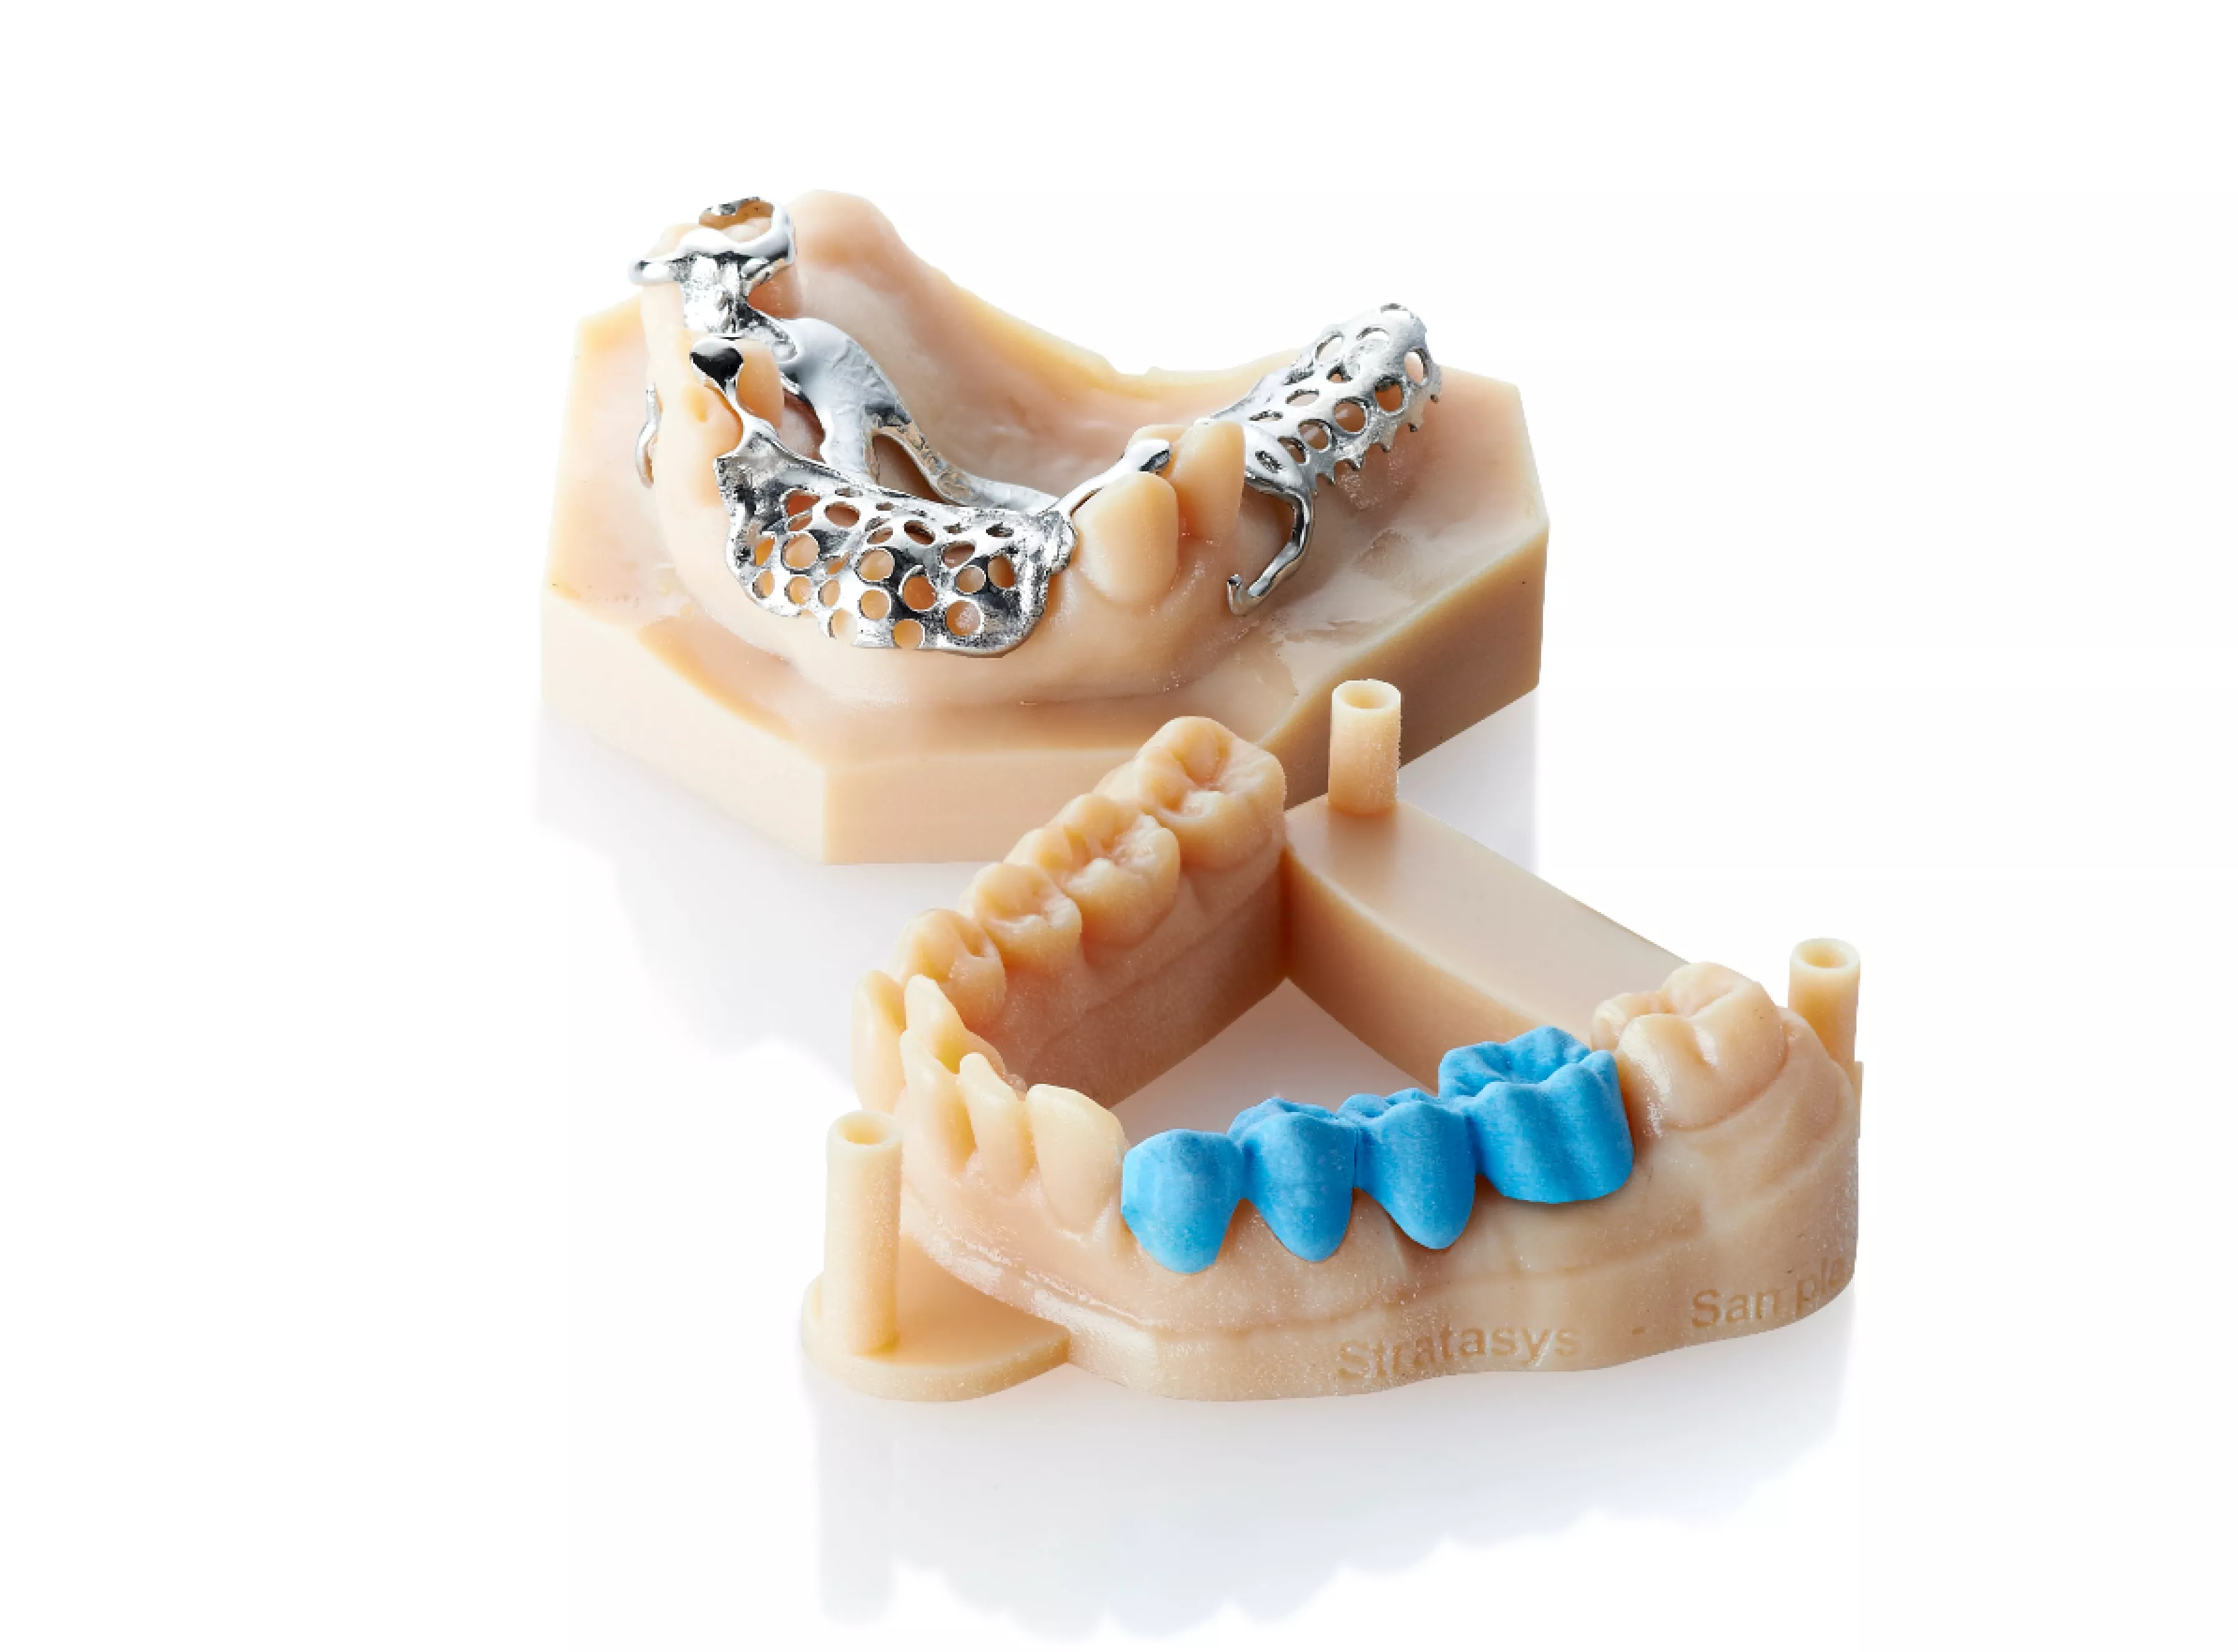 Stratasys Dental 3D printed frameworks in MED610 material